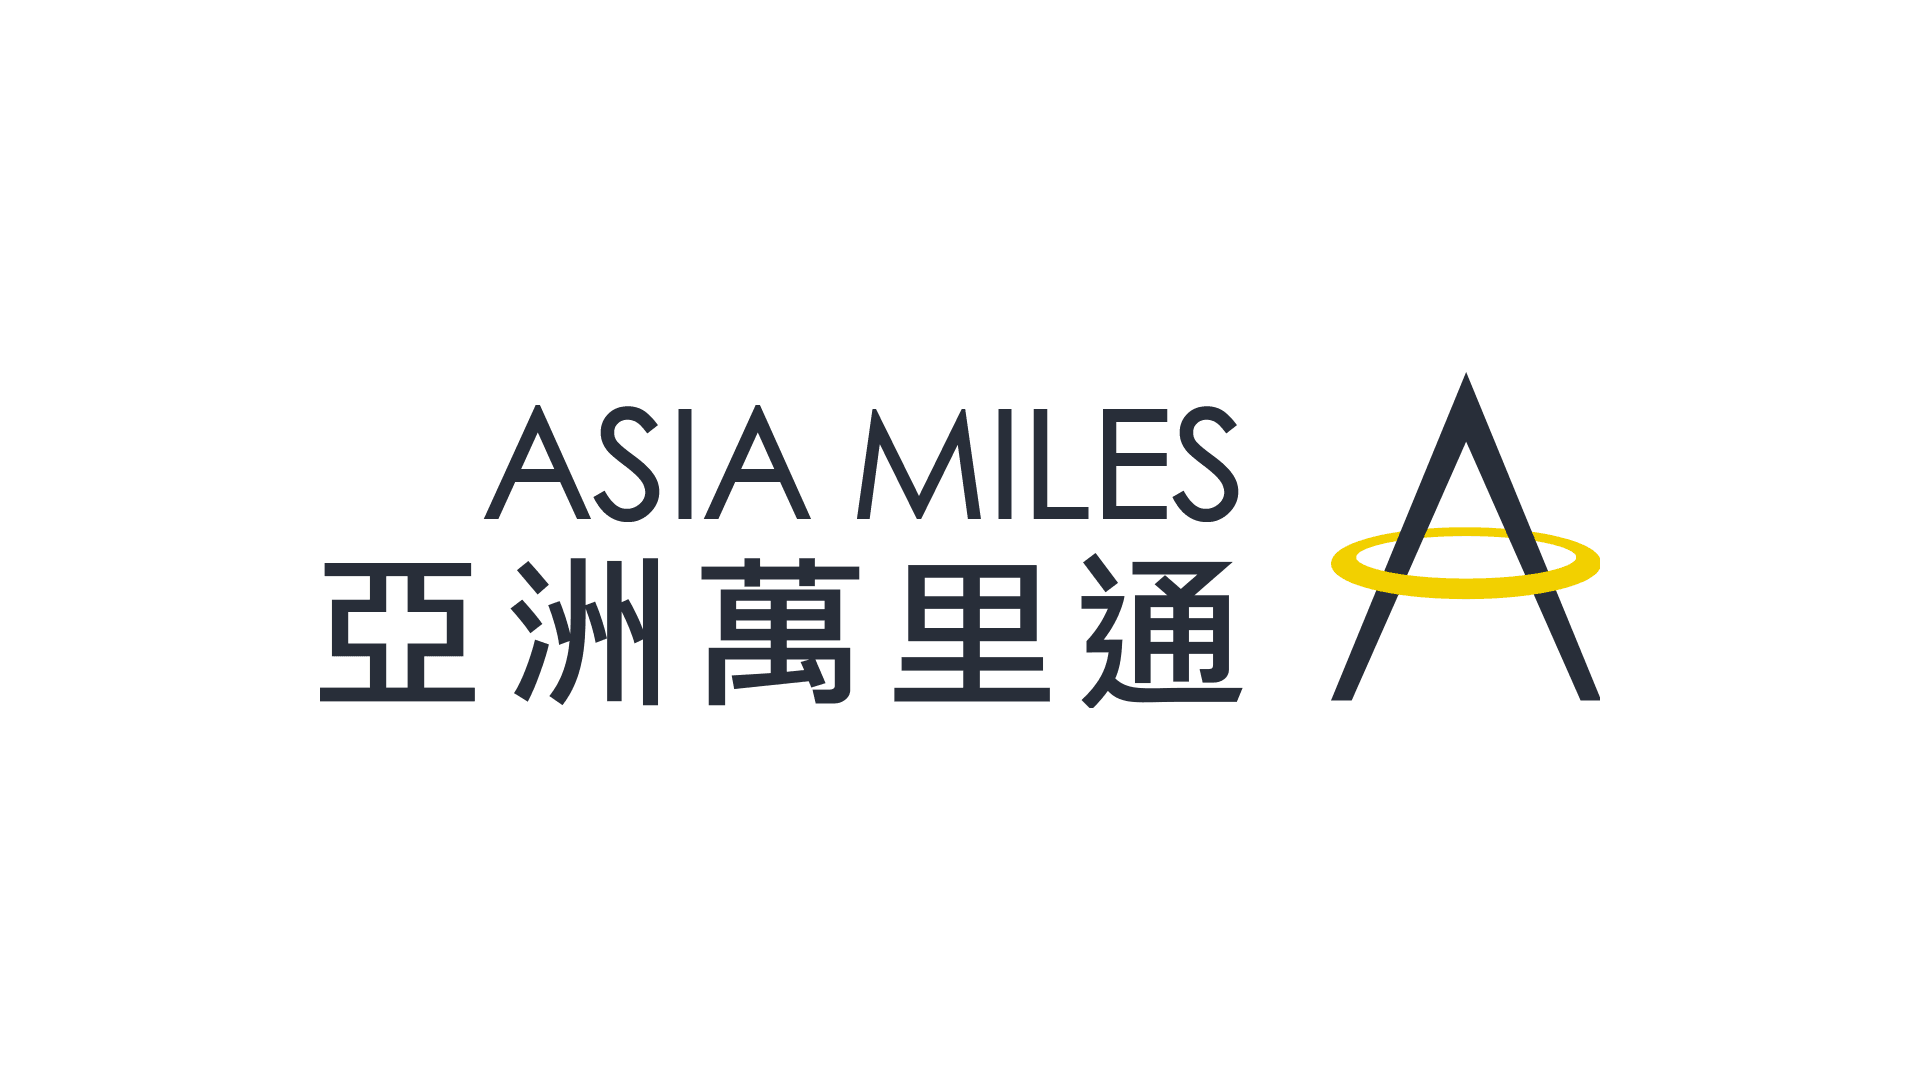 亞洲萬里通：里程計算加值優惠新政策 4倍好康大放送（國泰航空、港龍航空適用） ASIA MILES Logo Design